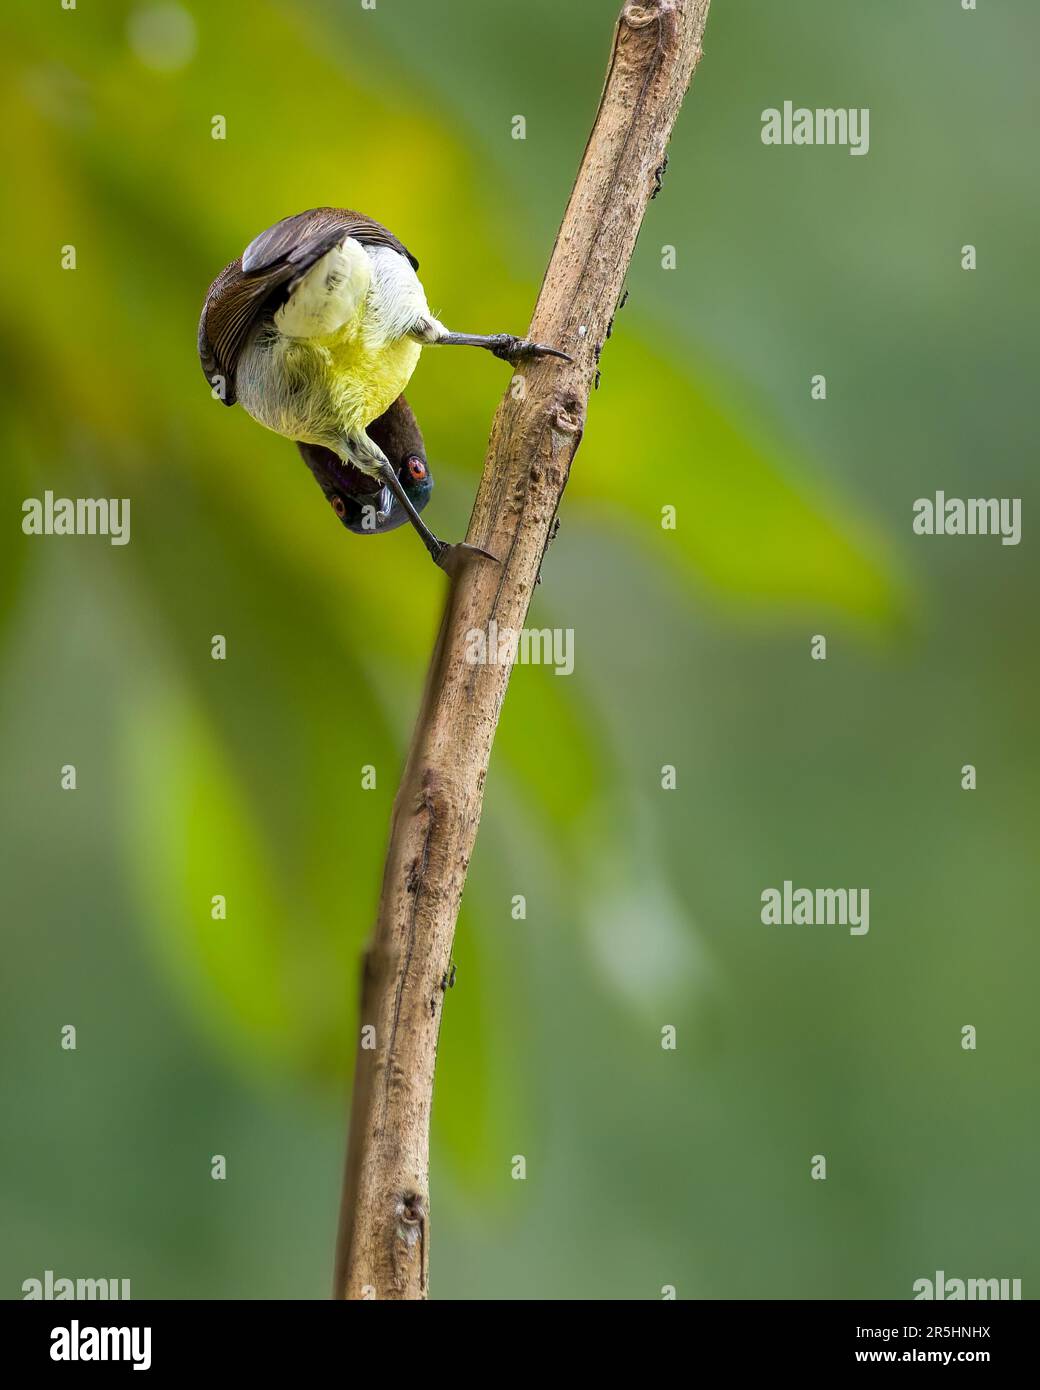 Songbird tient sur une branche et regarde maladroitement à travers ses jambes tout en se pliant, drôle moment d'oiseau. Banque D'Images